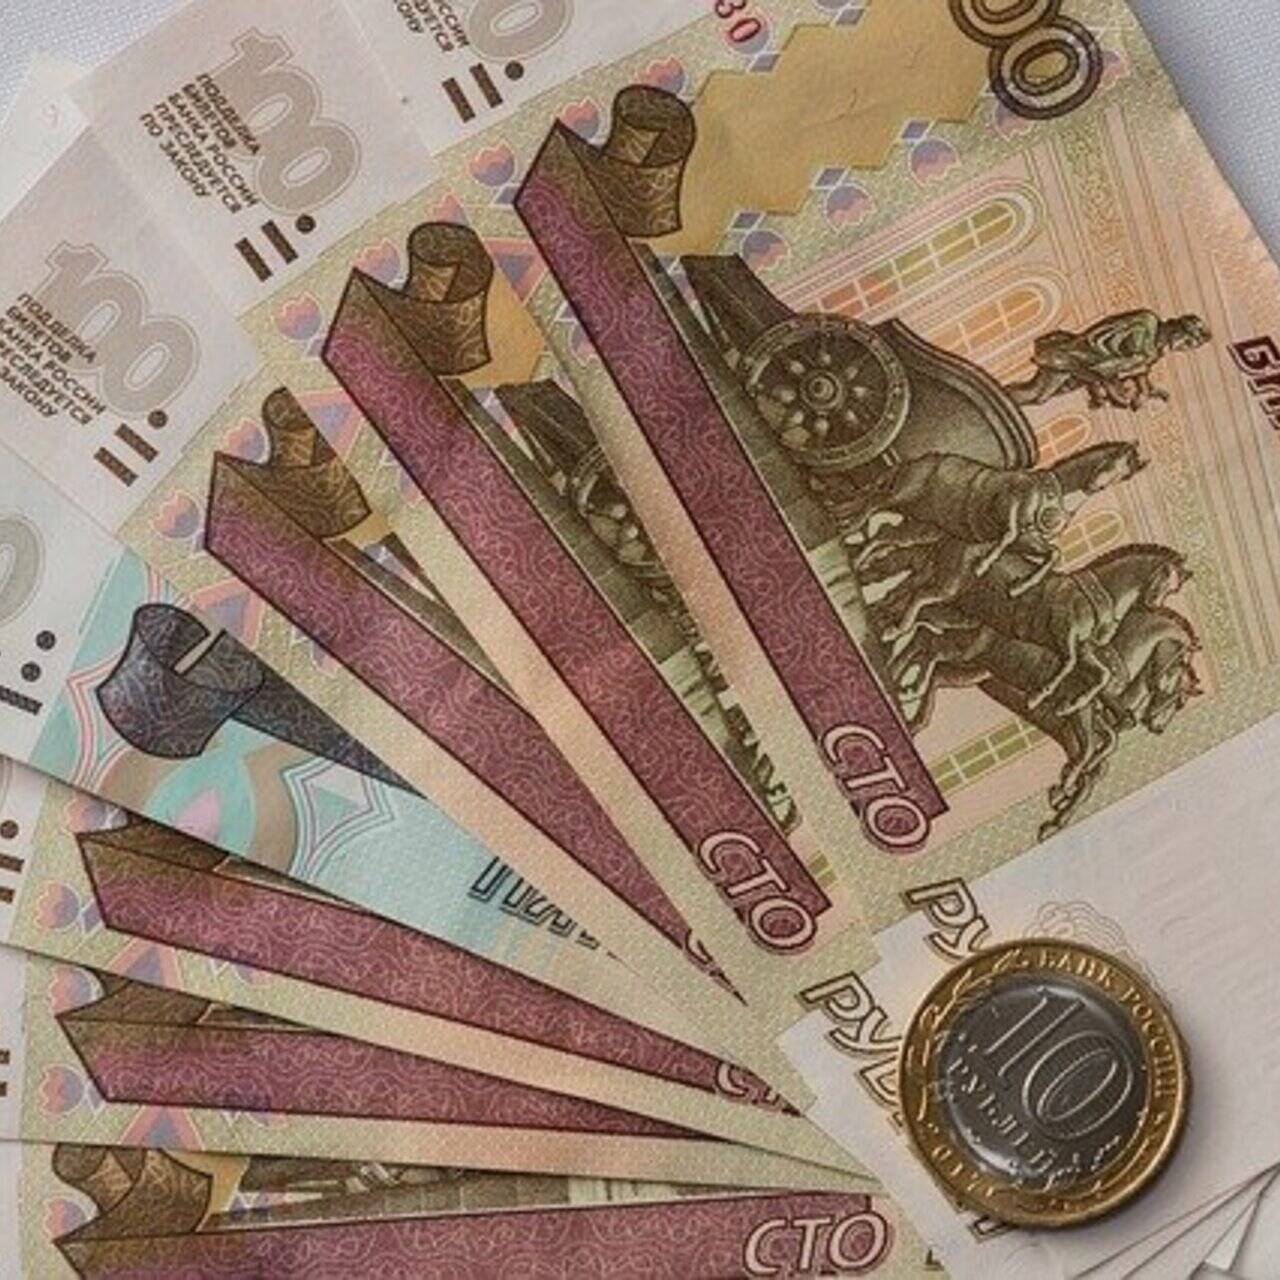 Купюра 100 рублей: что изображено на сторублевой банкноте России, виды и фото бумажных денег